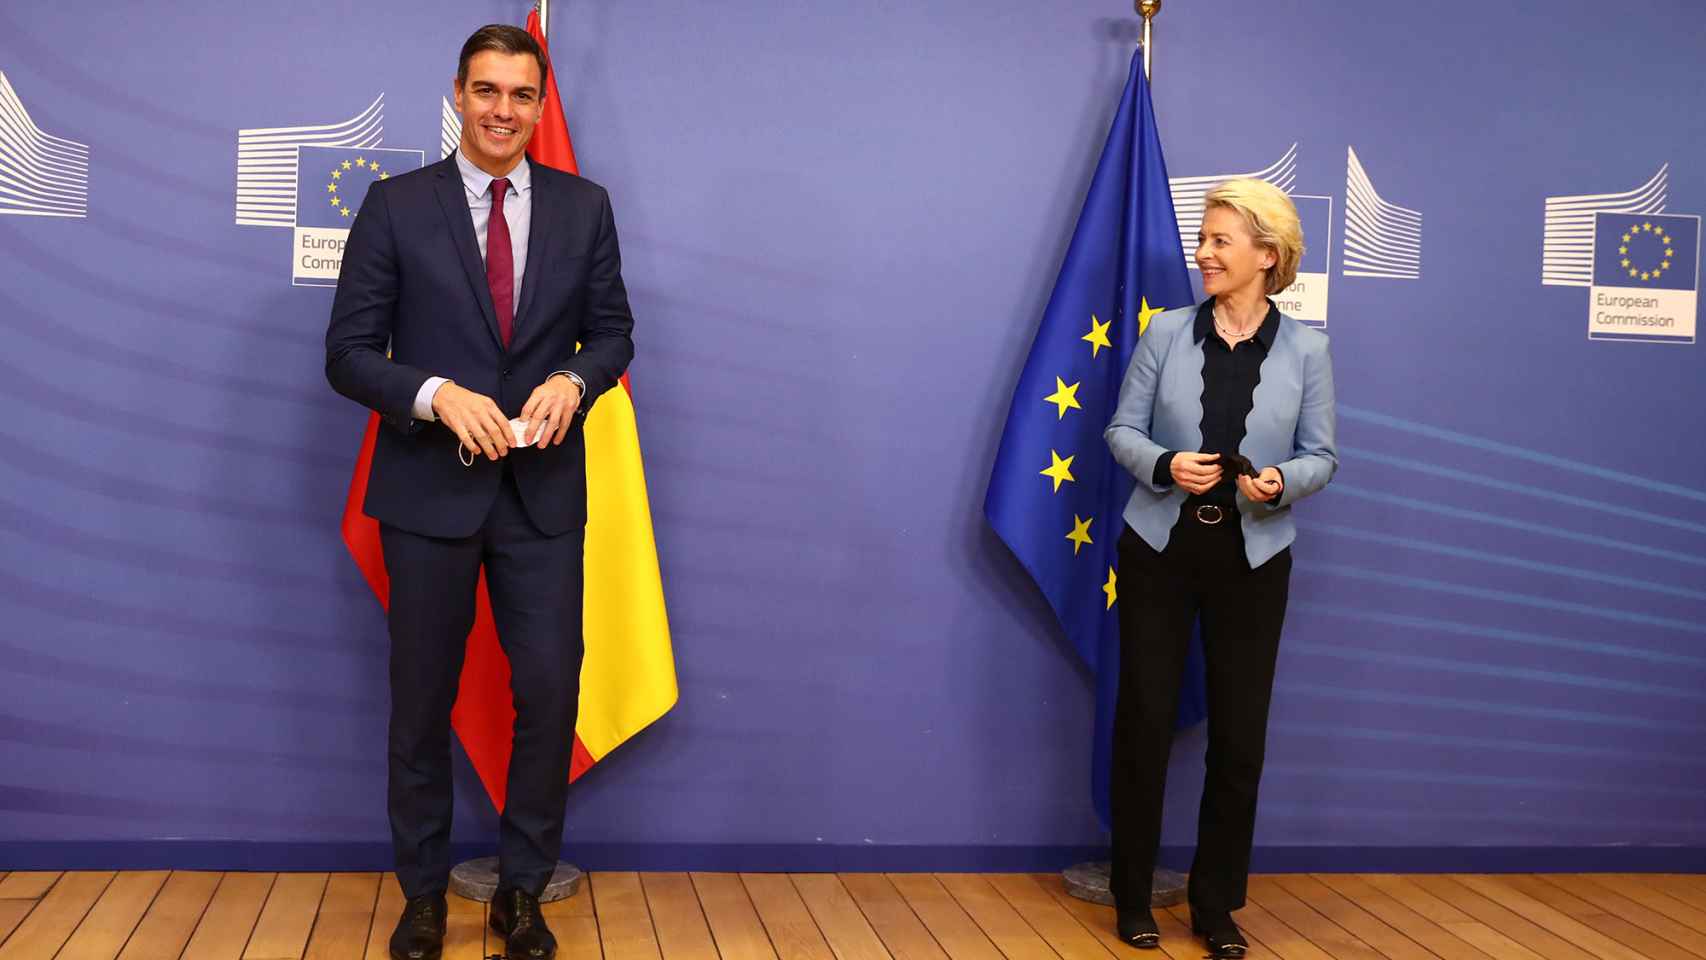 El presidente del Gobierno, Pedro Sánchez, durante su visita a la jefa de la Comisión, Ursula von der Leyen, este lunes en Bruselas